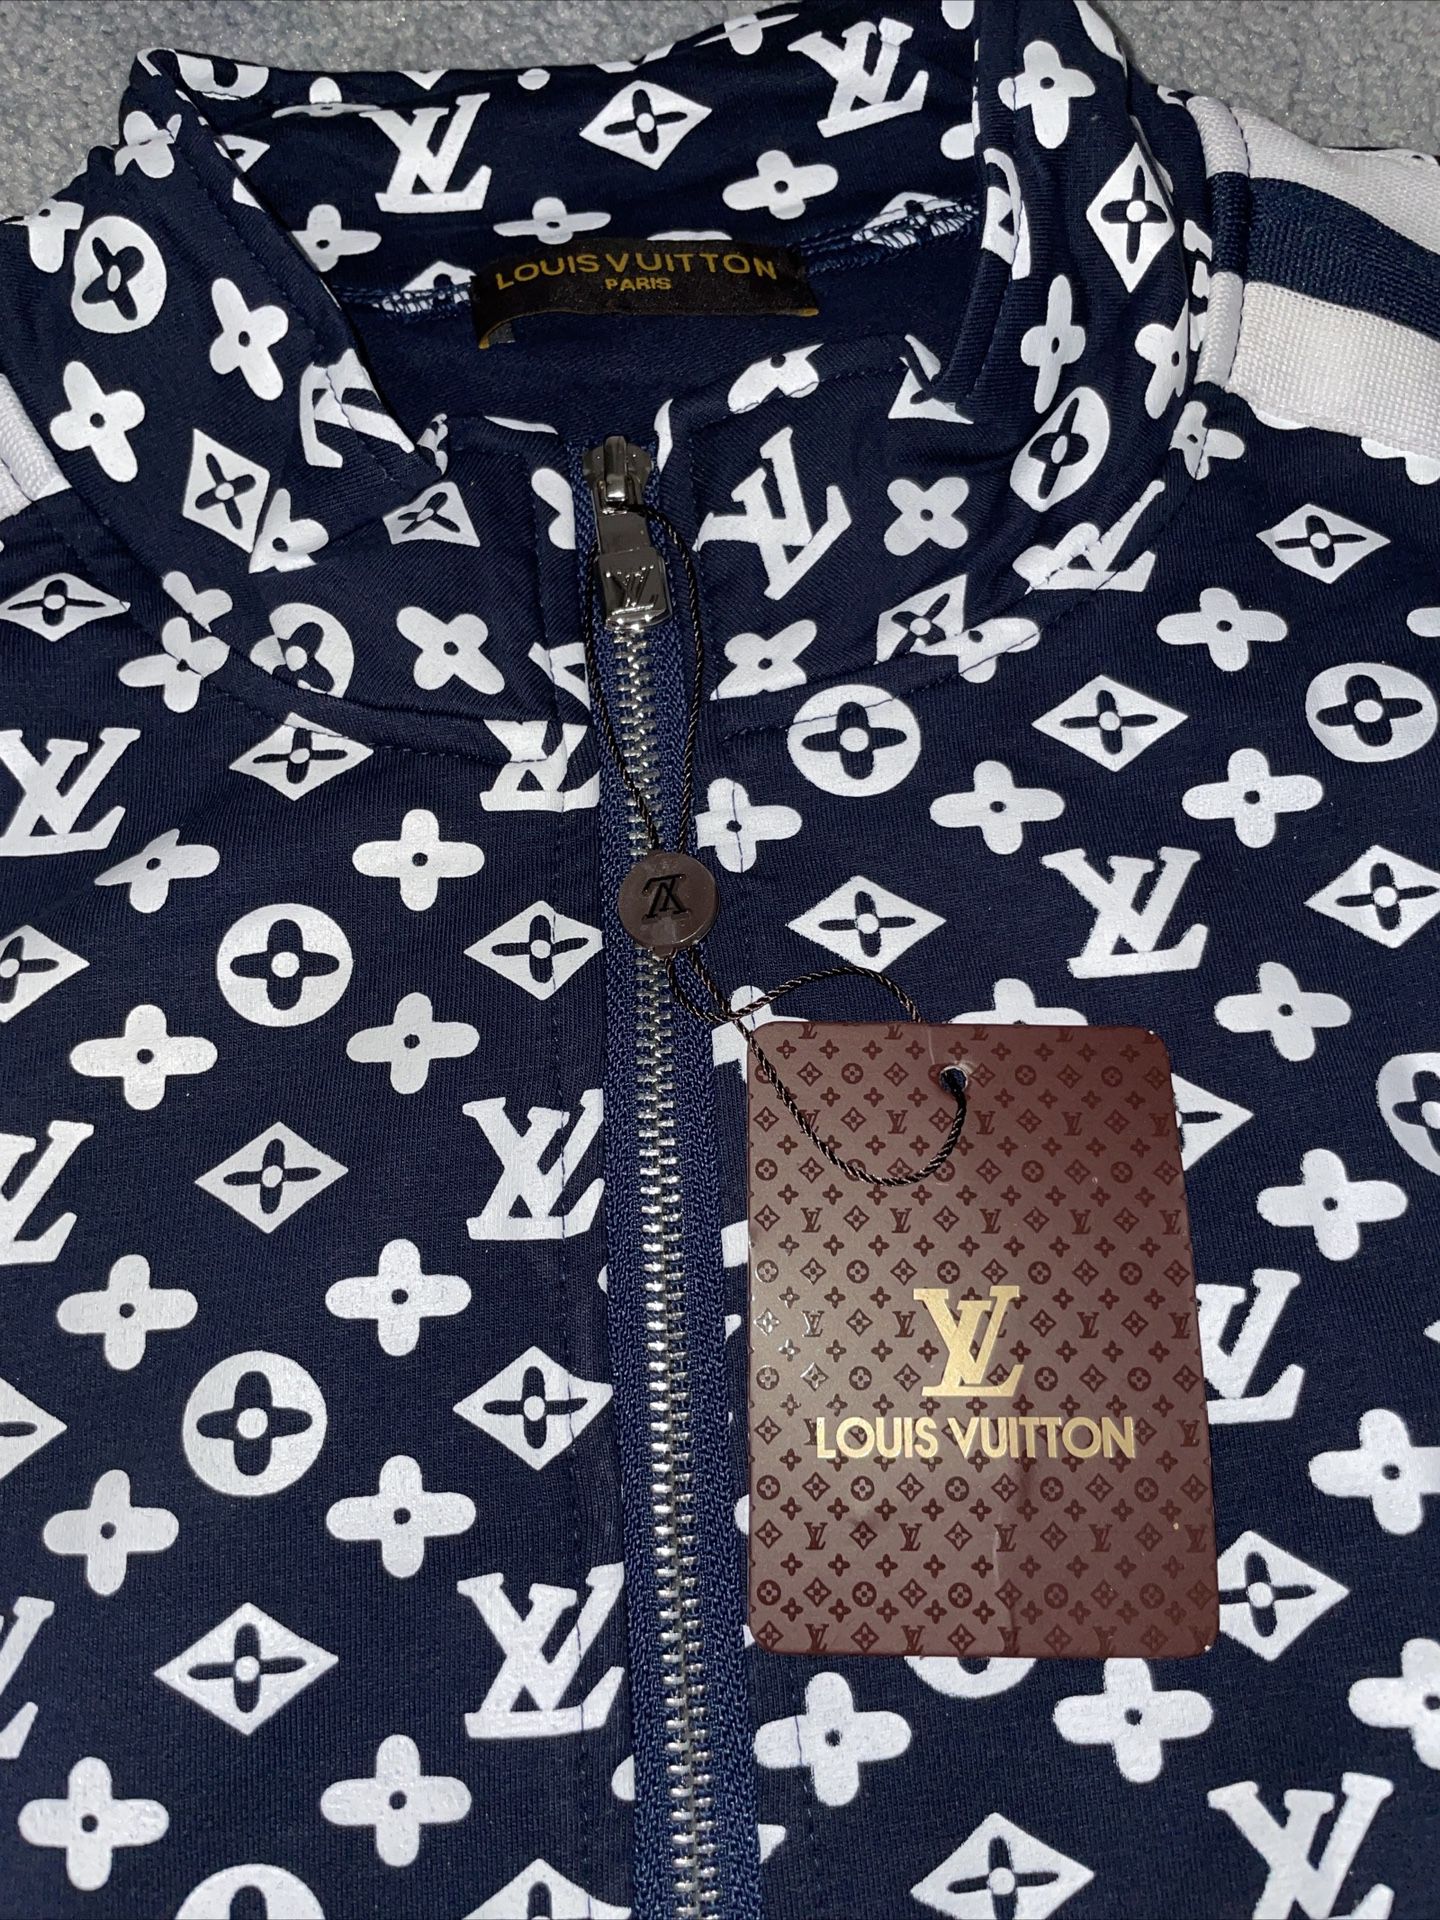 Cheap Louis Vuitton tracksuits OnSale, Discount Louis Vuitton tracksuits  Free Shipping!